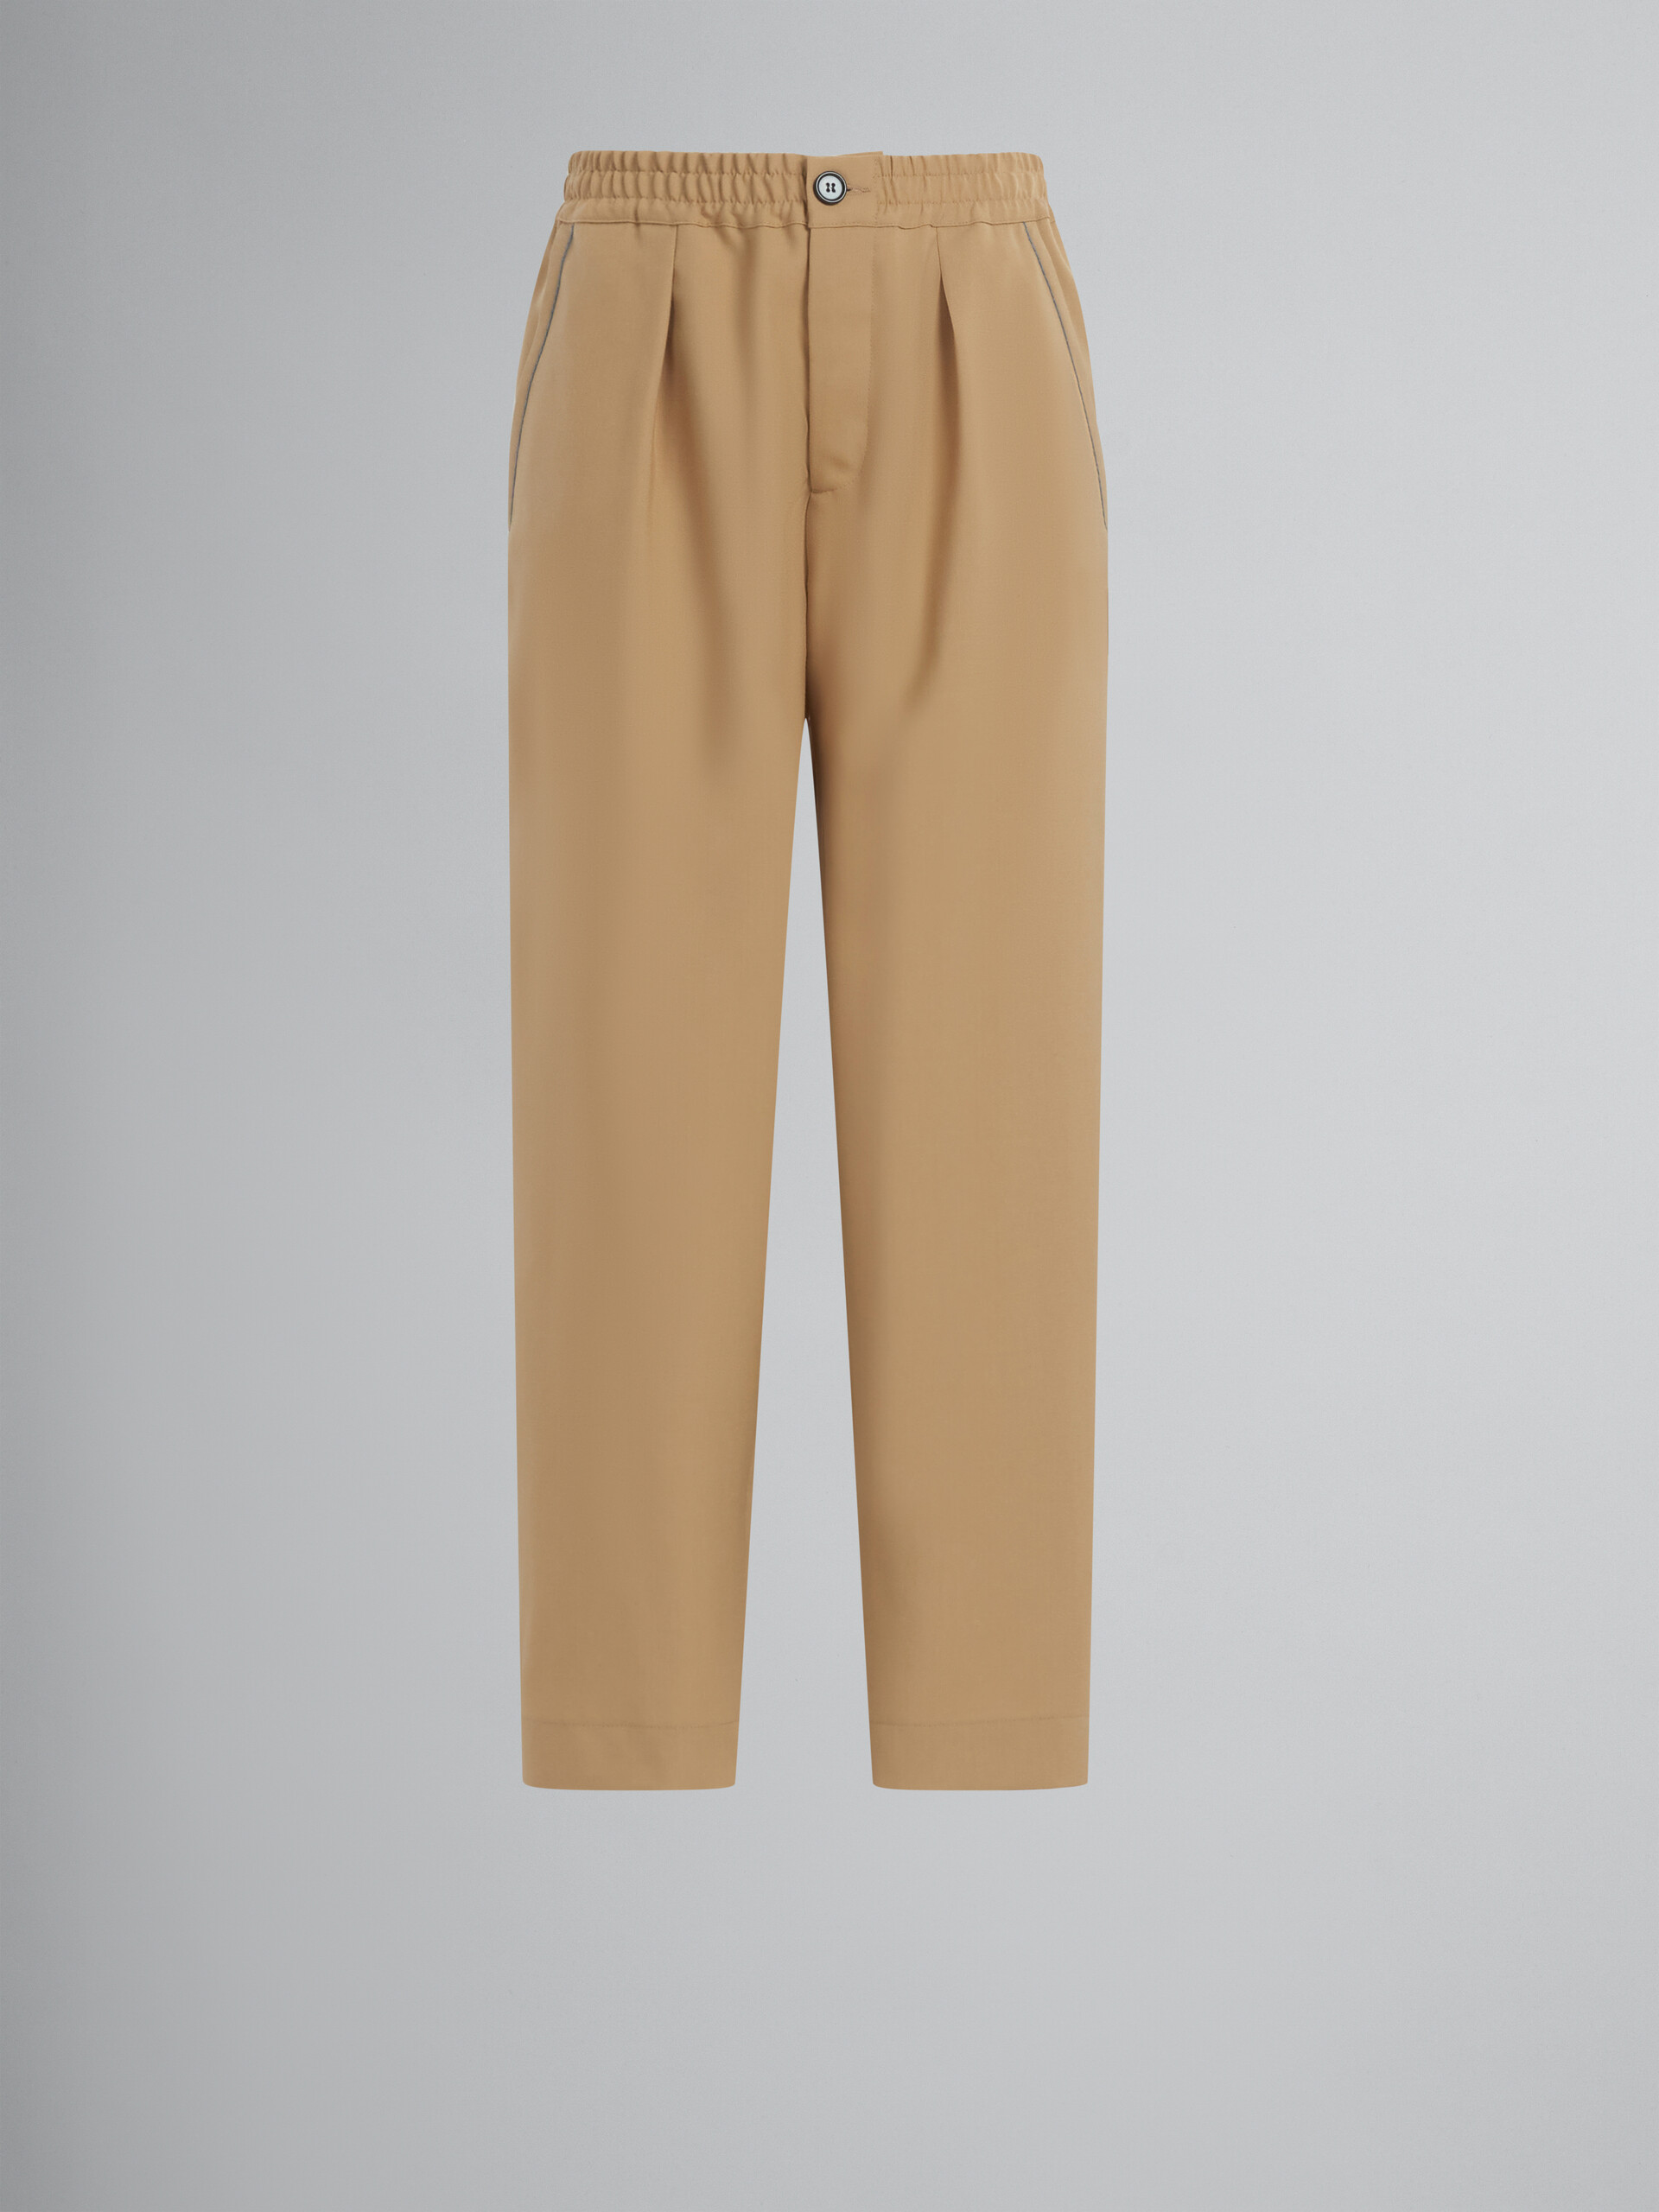 Pantalón corto de lana tropical azul - Pantalones - Image 1